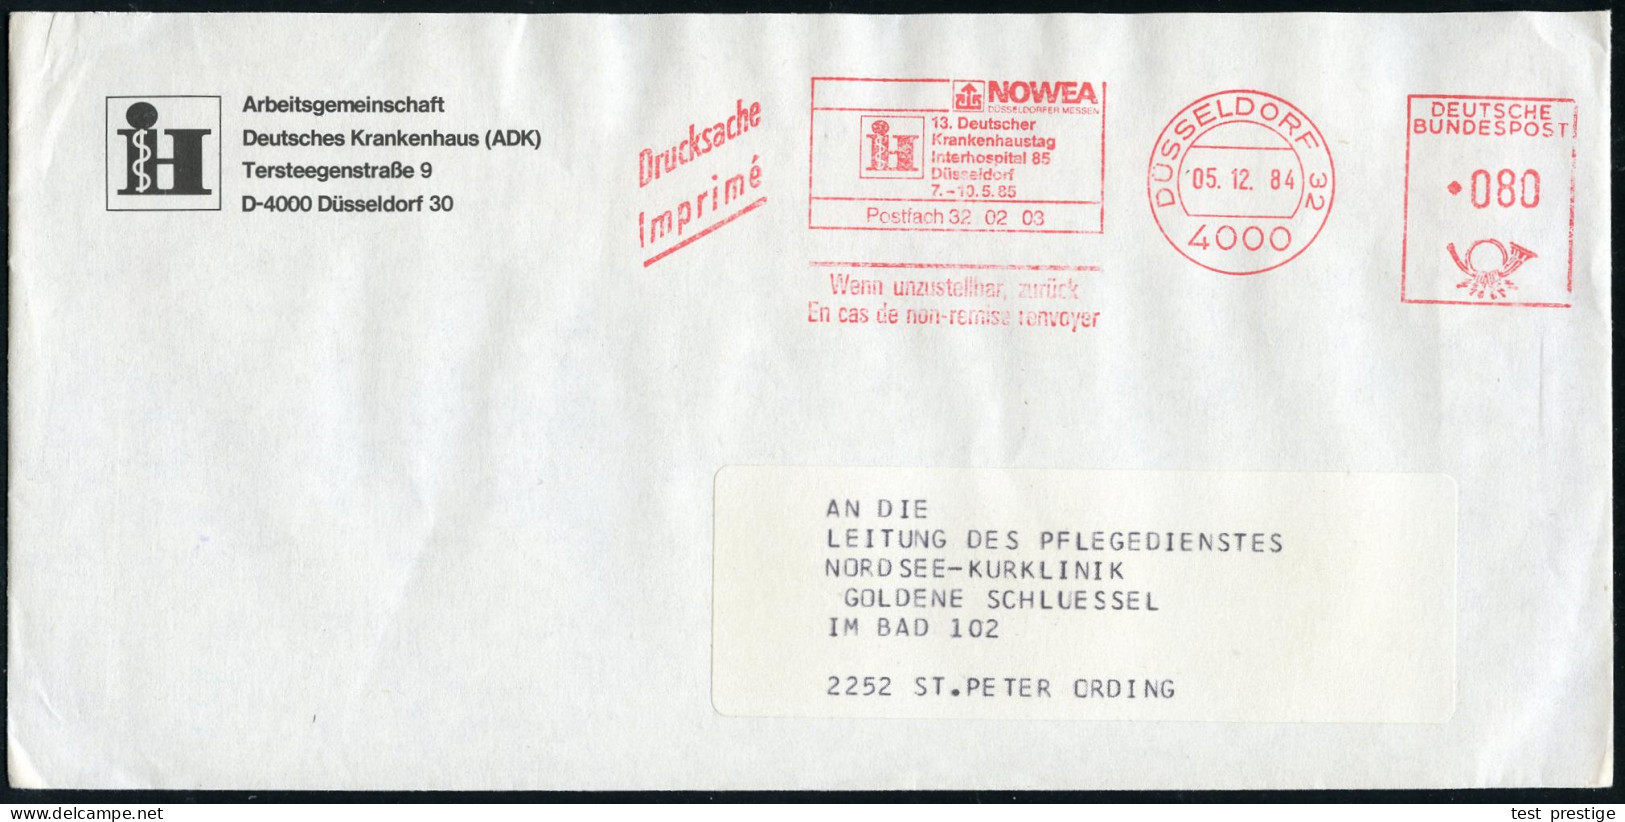 4000 DÜSSELDORF 32/ NOWEA/ !&sect;:Deutscher/ Krankenhaustag/ Interhospital 85.. 1984 (5.12.) AFS (Logo) Auf Vordruck-Bf - Médecine